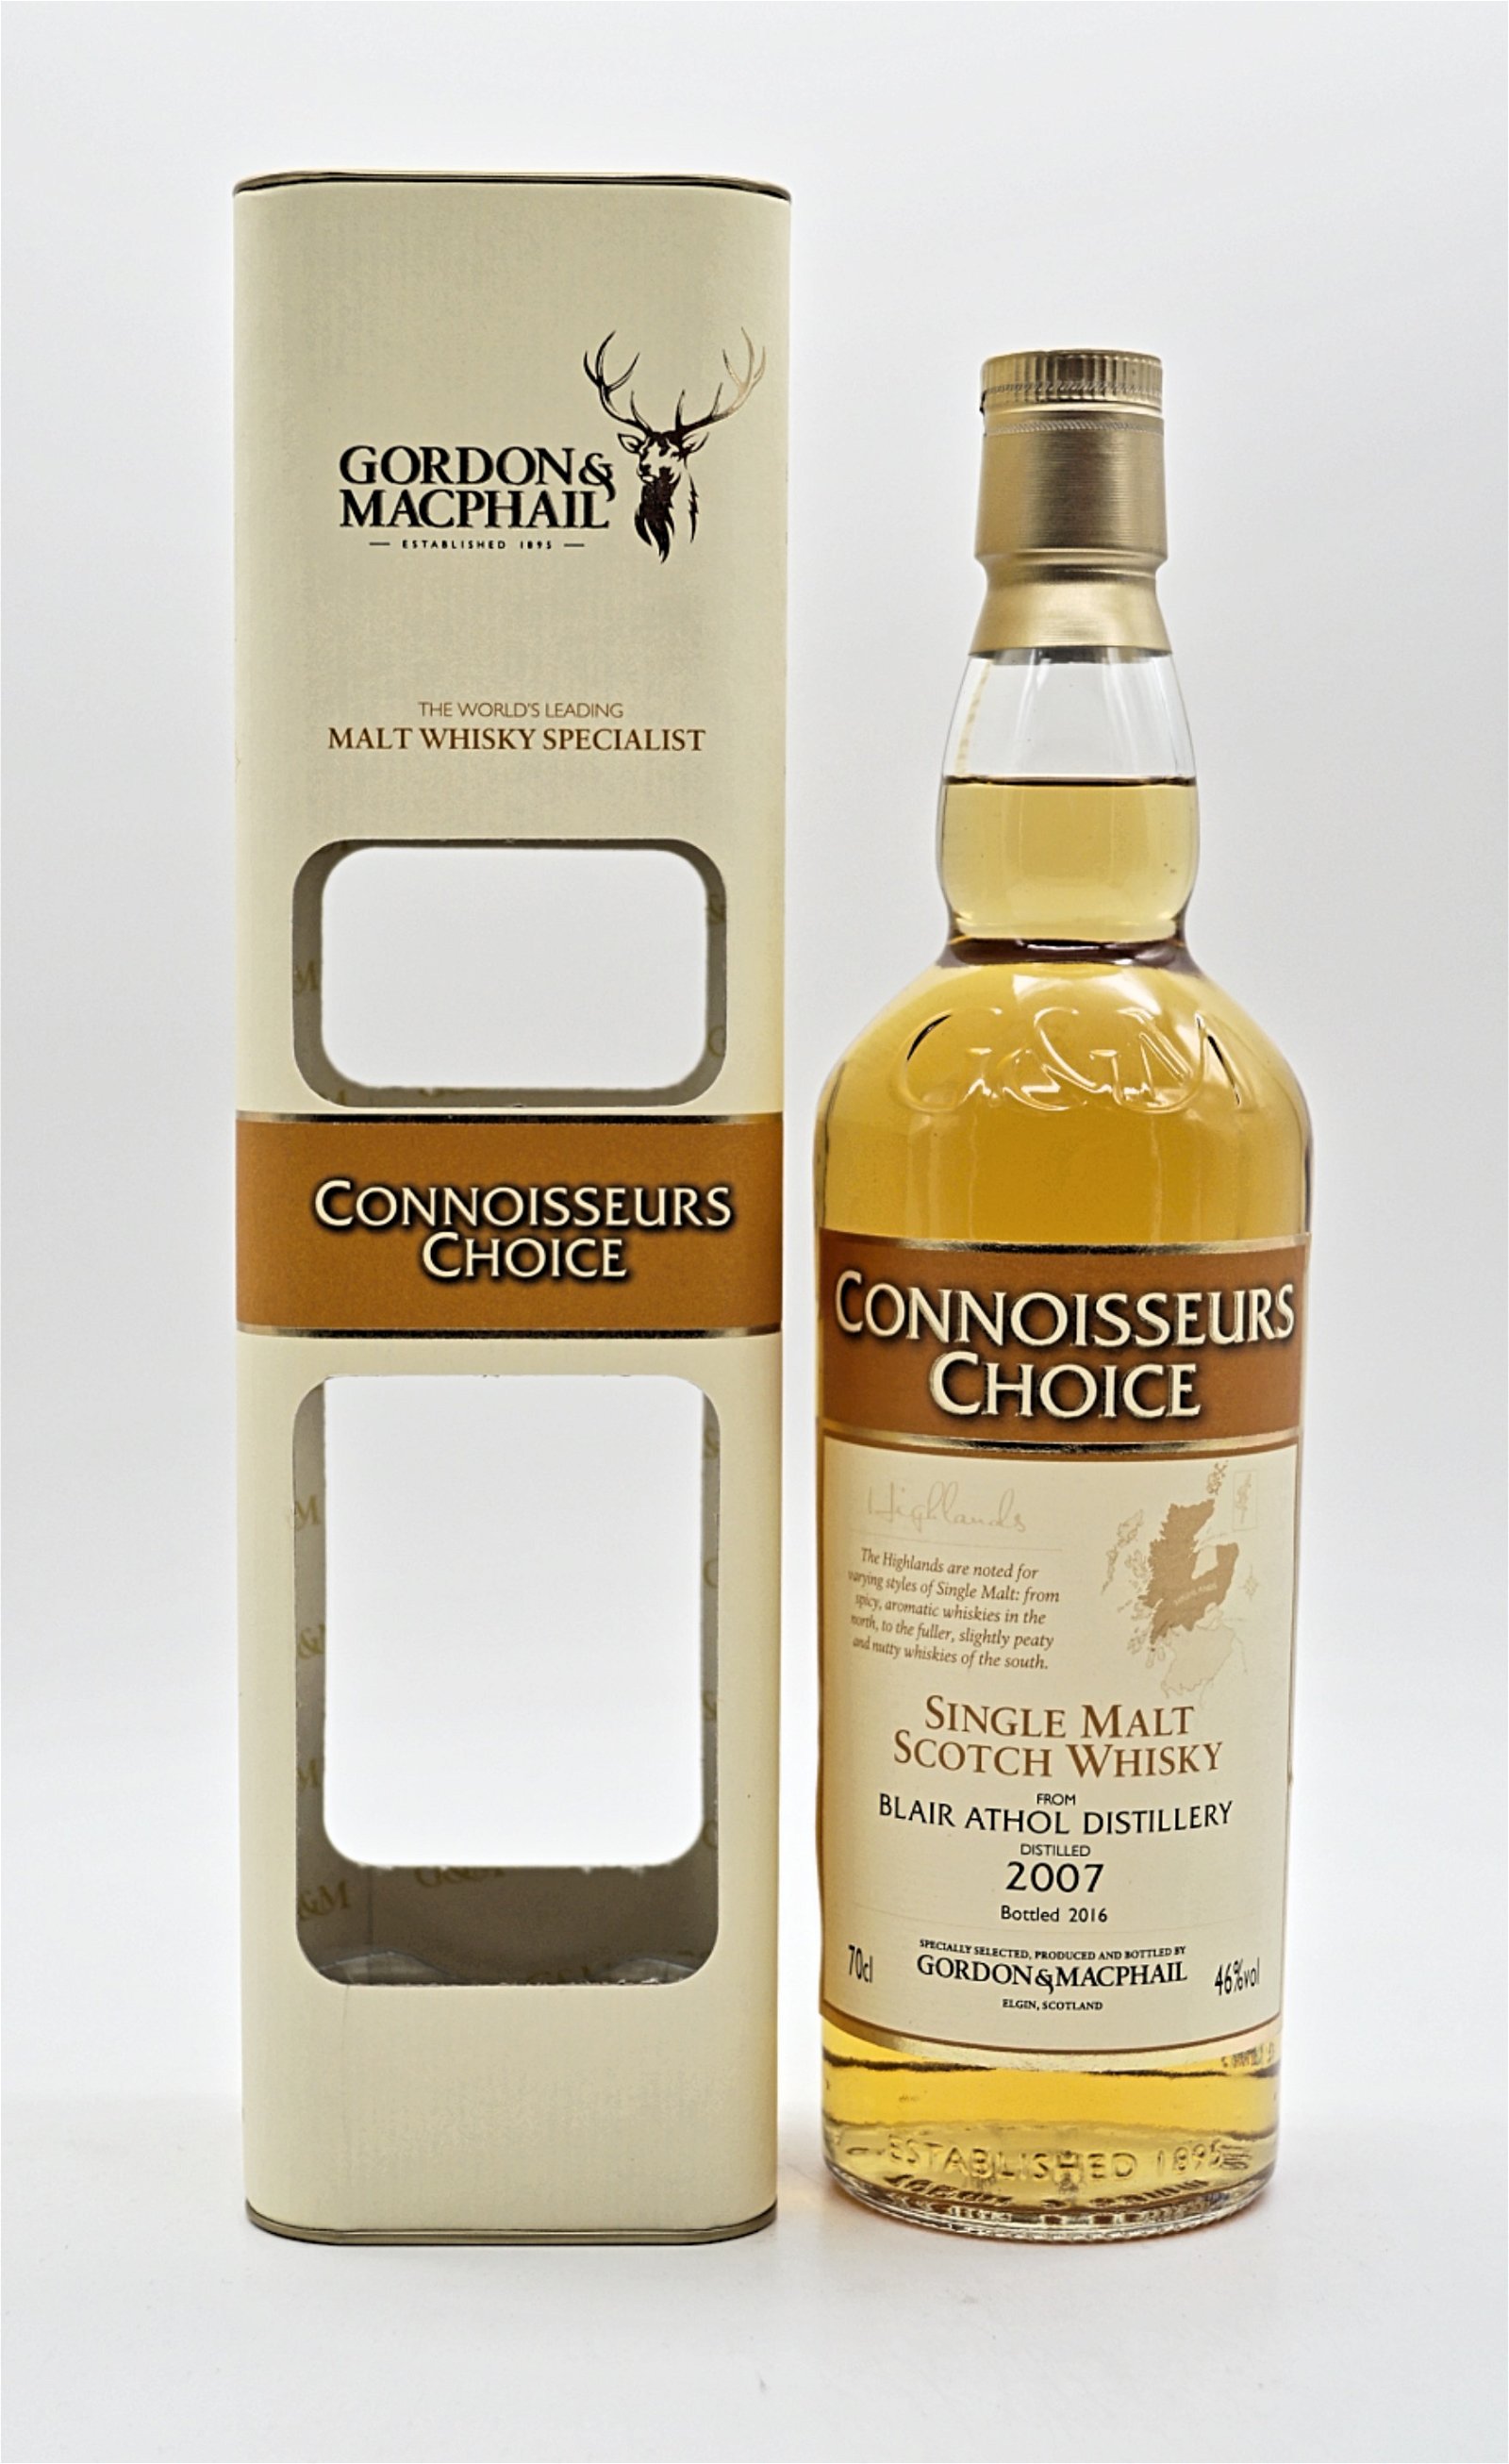 Gordon & Macphail Connoisseurs Choice Blair Athol Distillery 2007/2016 Single Malt Scotch Whisky